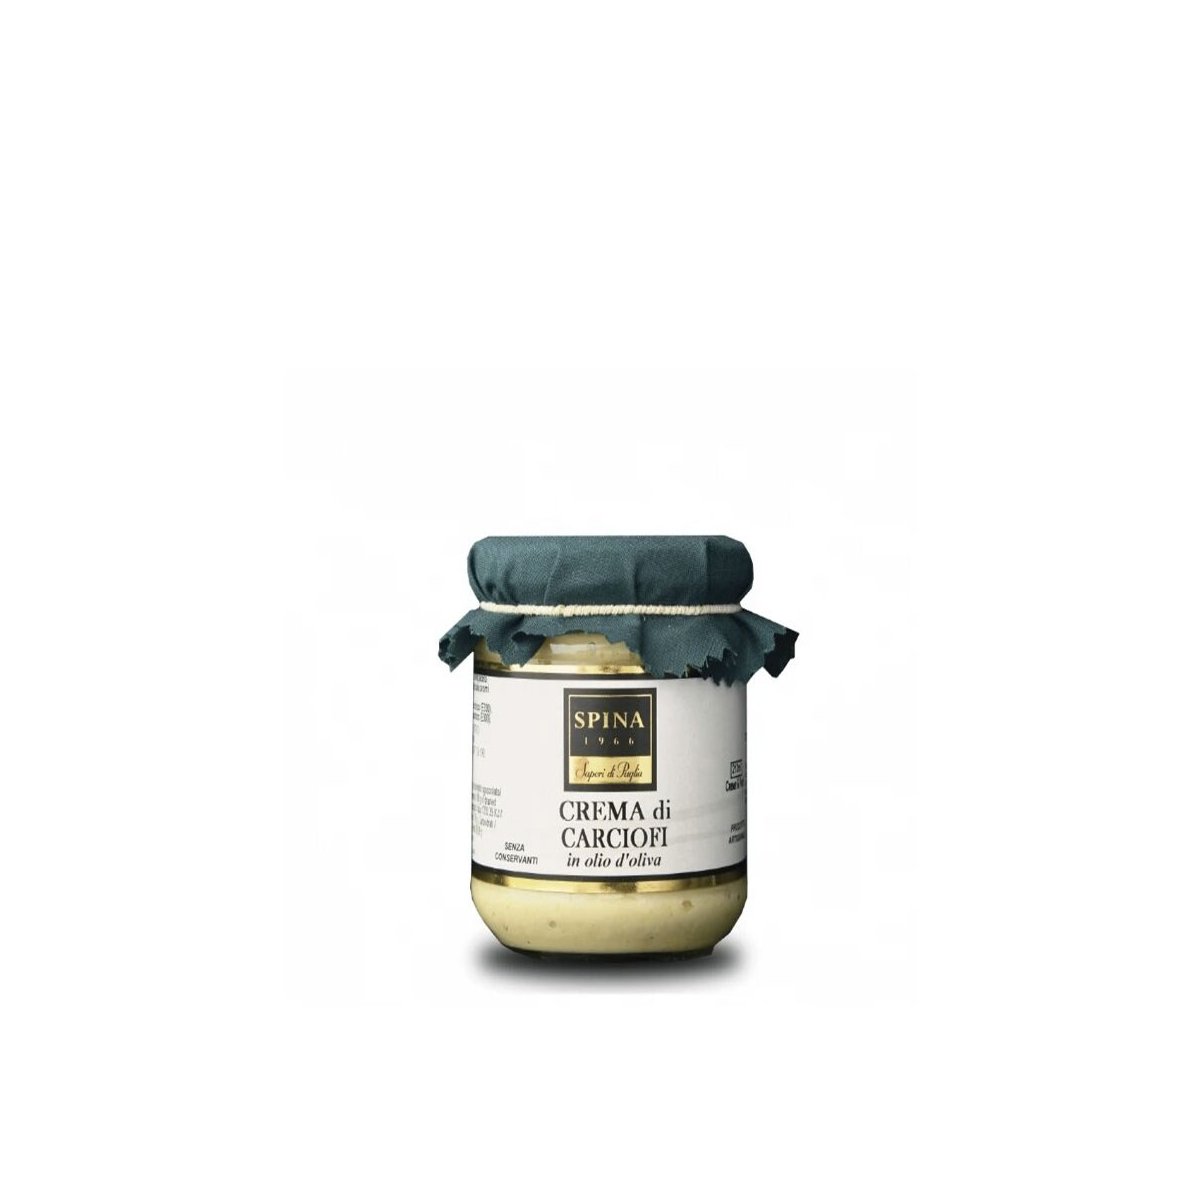 Crema di carciofi in olio d'oliva